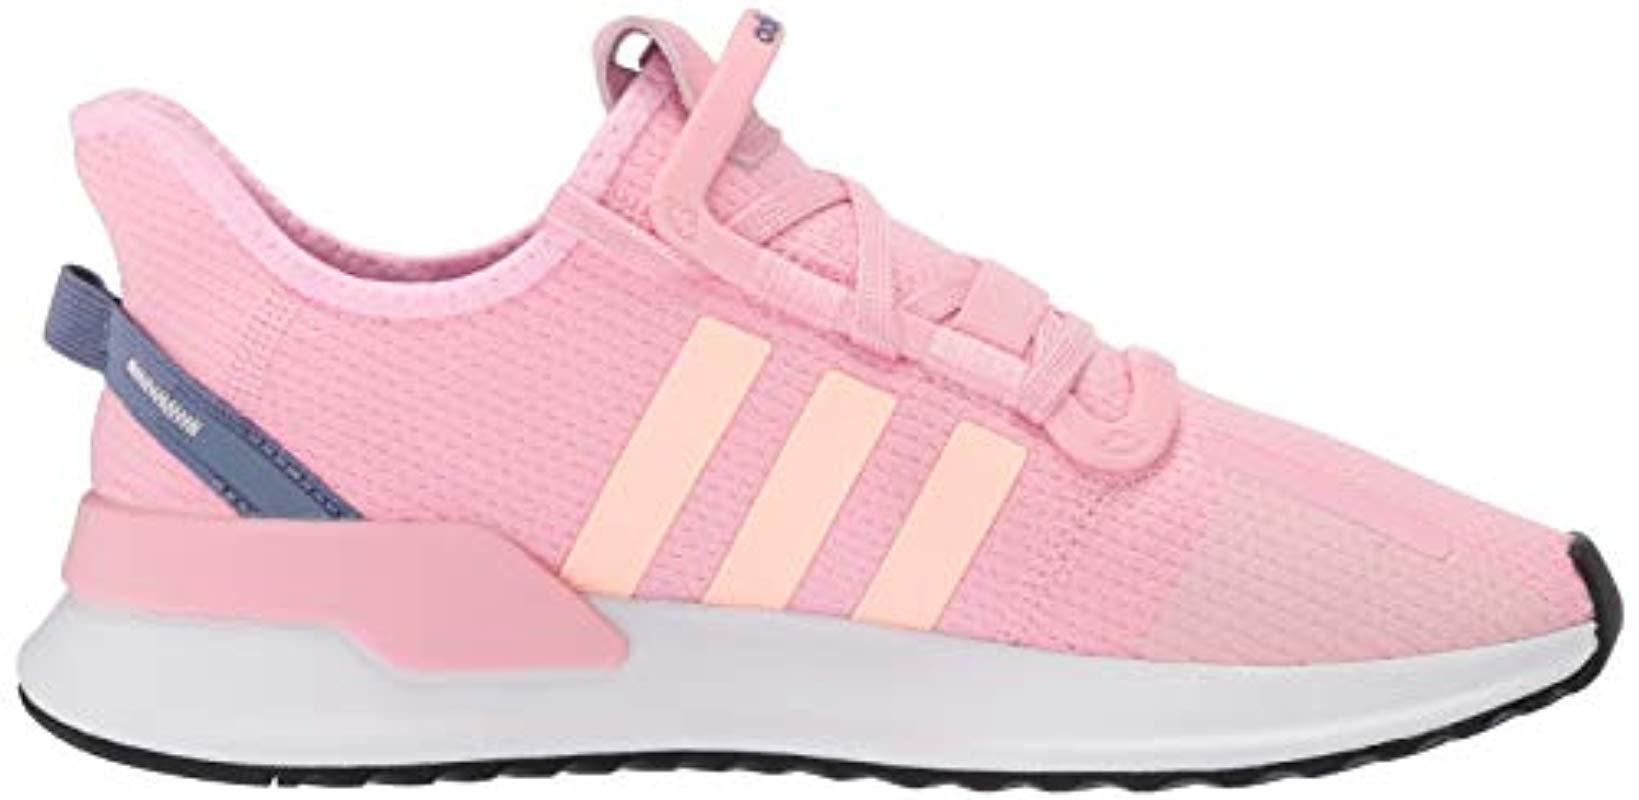 adidas Originals U_path Running Shoe in Pink - Lyst